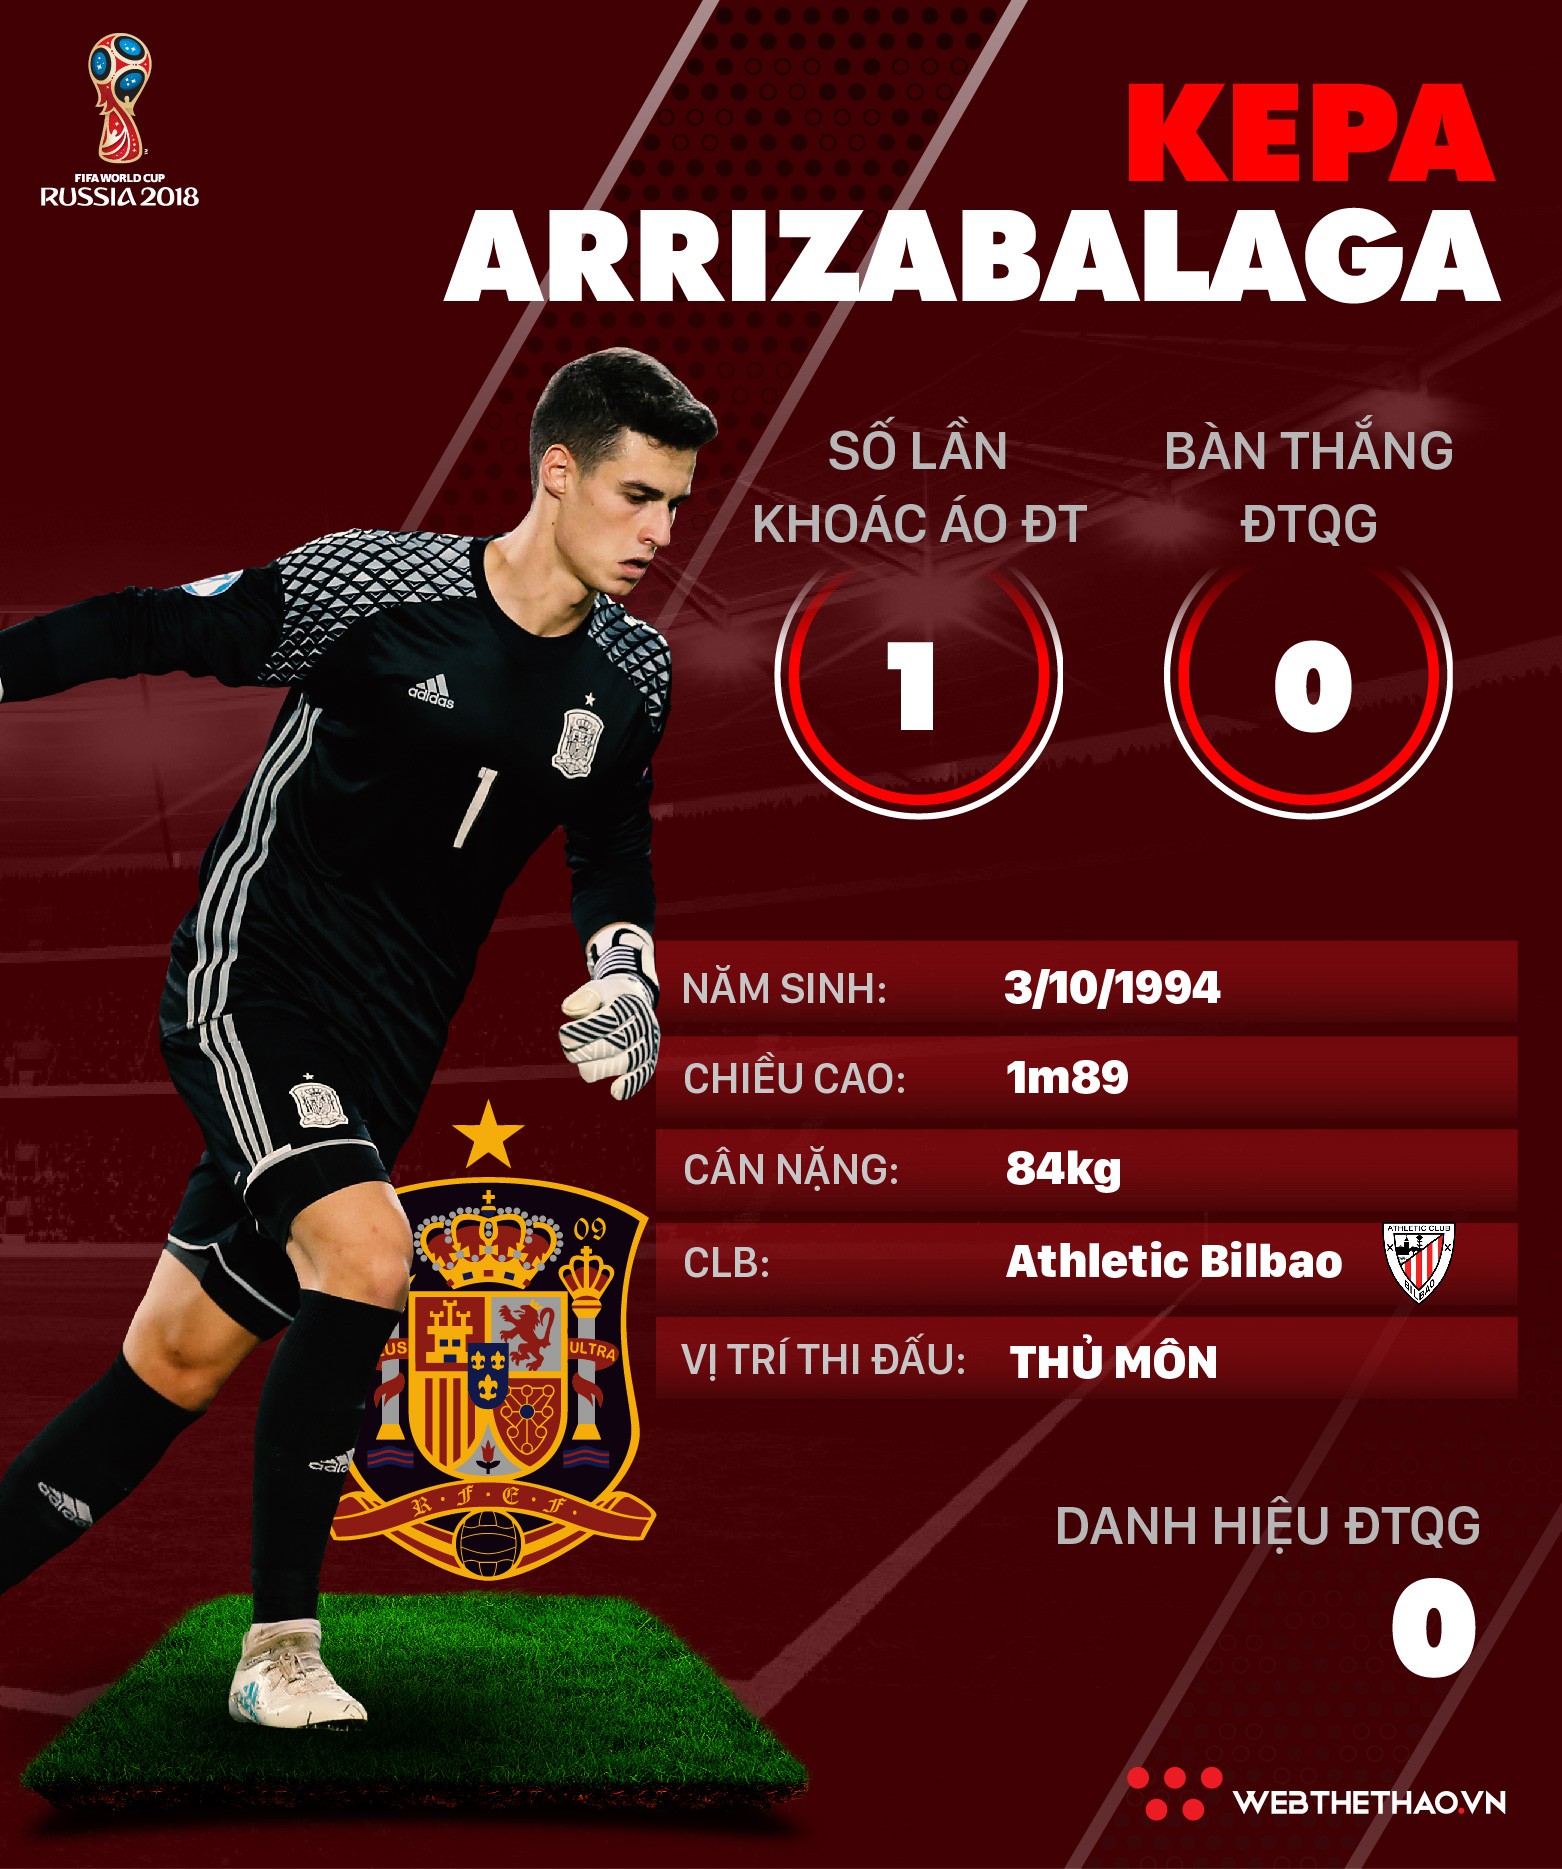 Thông tin cầu thủ Kepa Arrizabalaga của ĐT Tây Ban Nha dự World Cup 2018 - Ảnh 1.